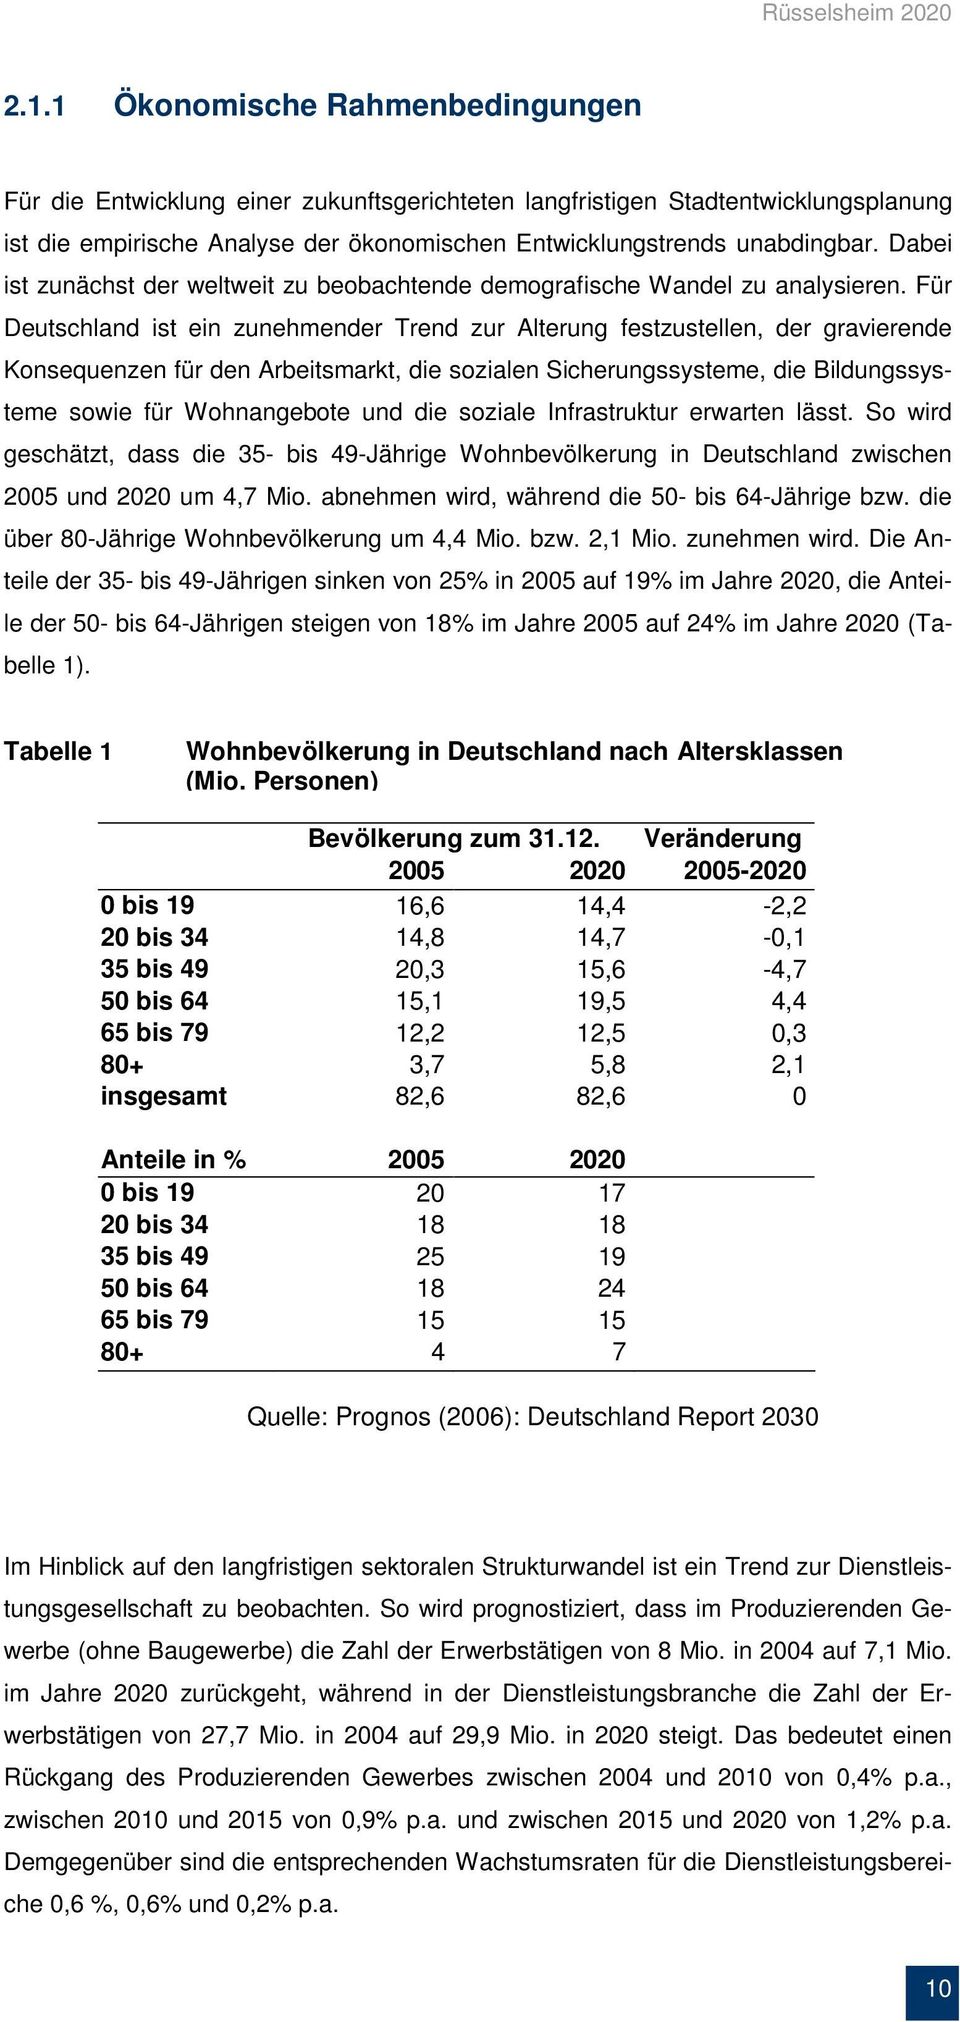 Für Deutschland ist ein zunehmender Trend zur Alterung festzustellen, der gravierende Konsequenzen für den Arbeitsmarkt, die sozialen Sicherungssysteme, die Bildungssysteme sowie für Wohnangebote und